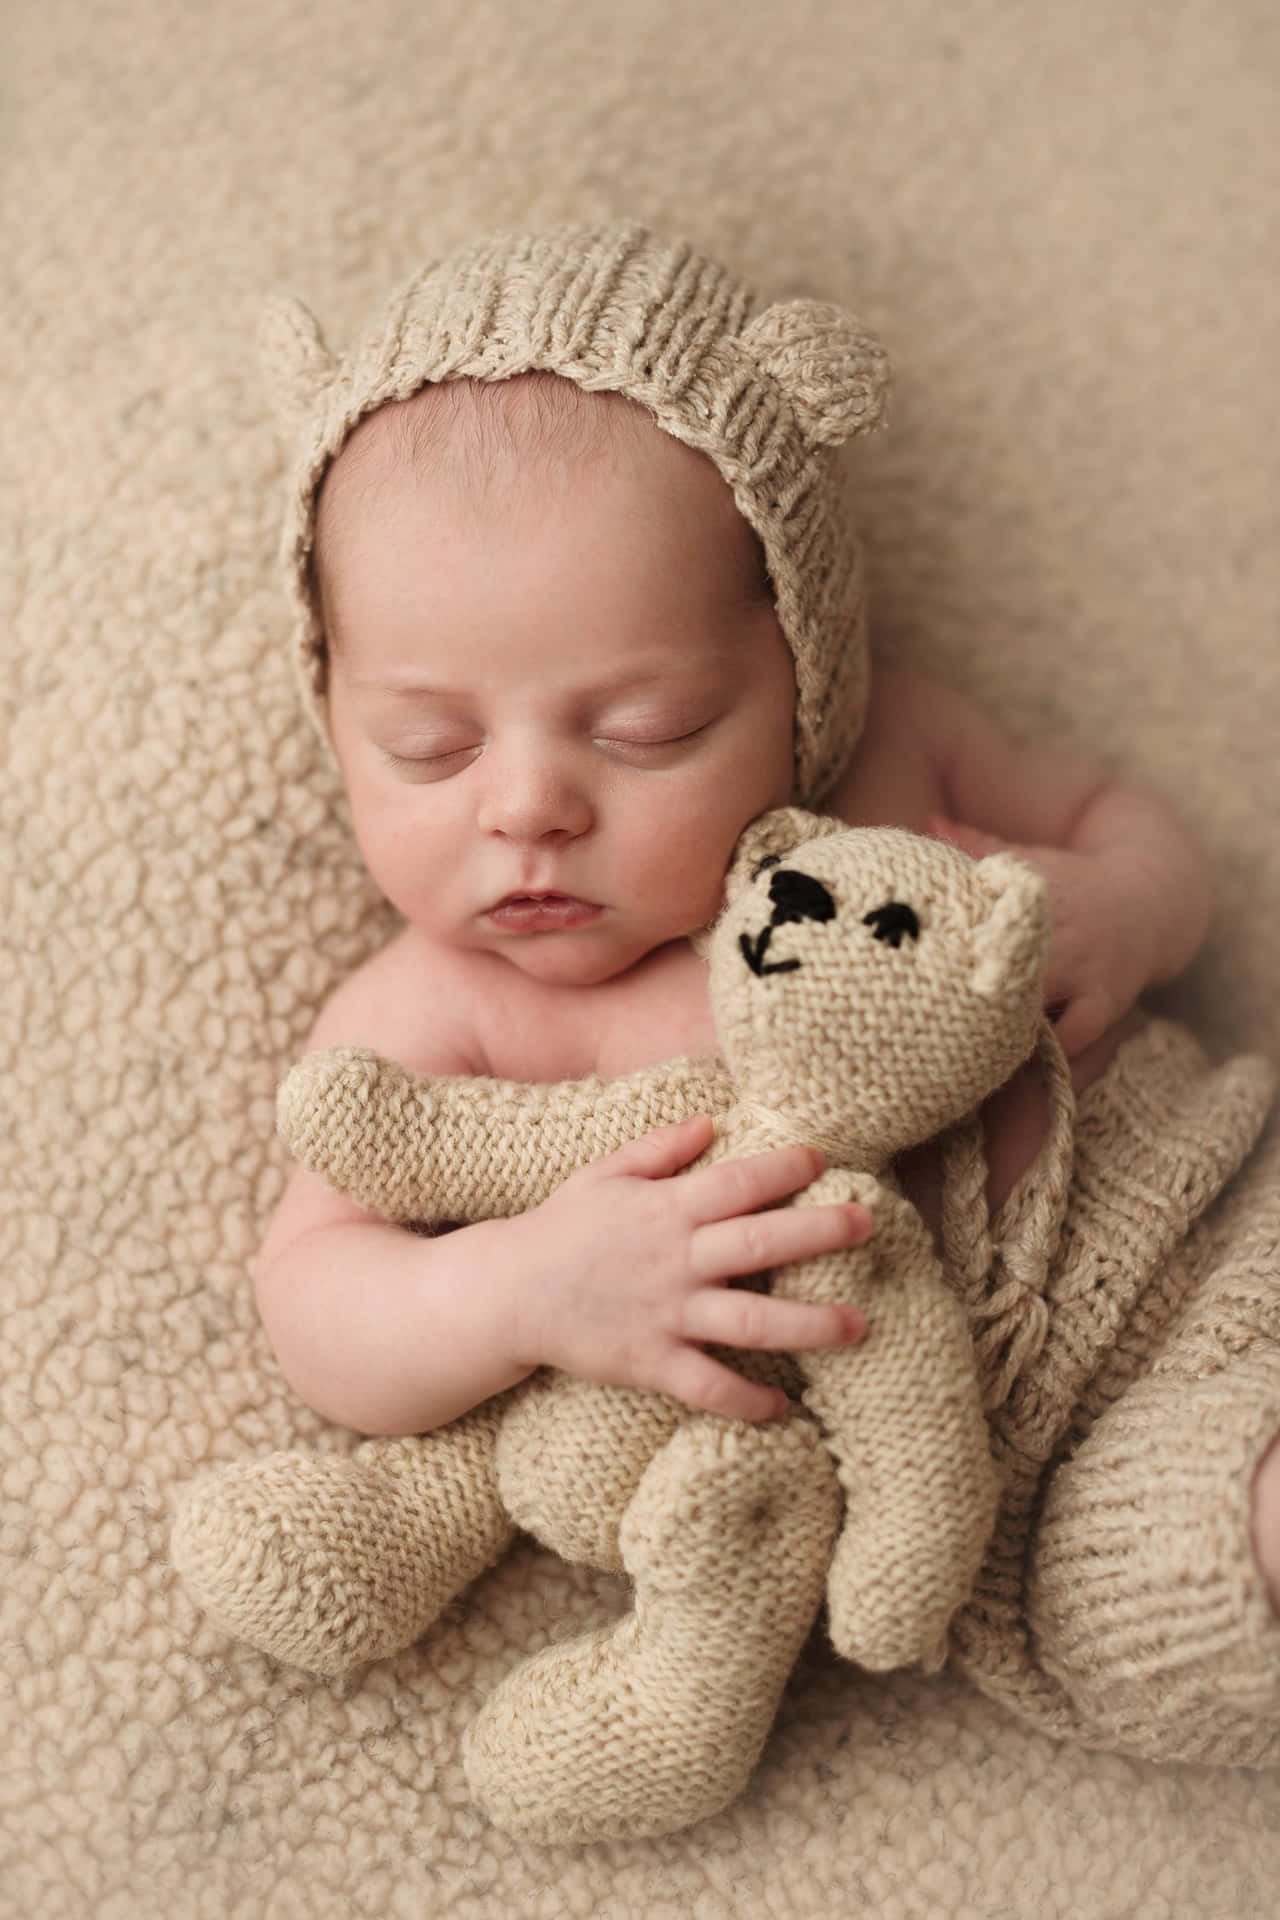 Newborn baby's first photoshoot